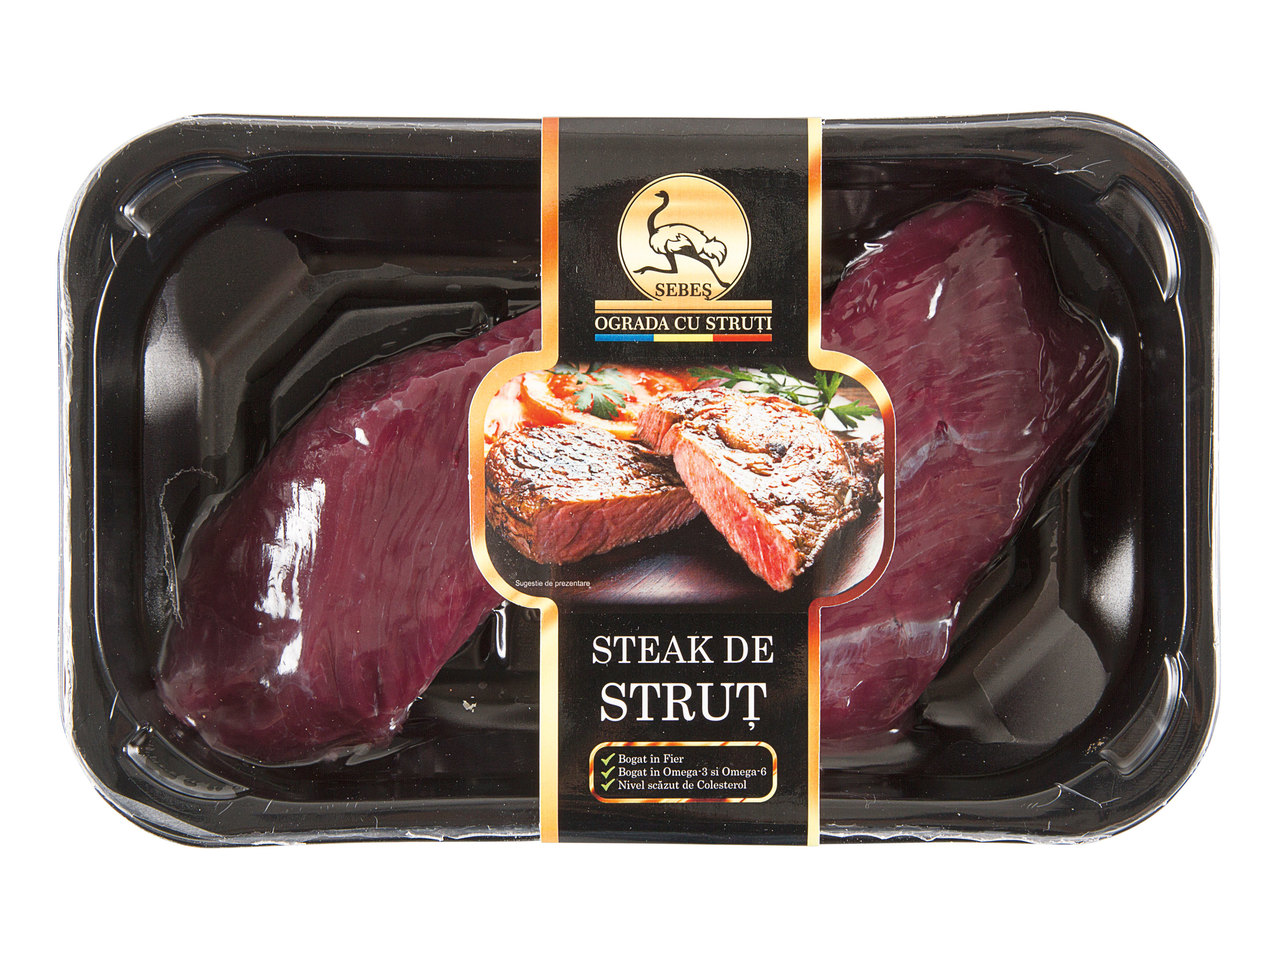 Steak / File de struț